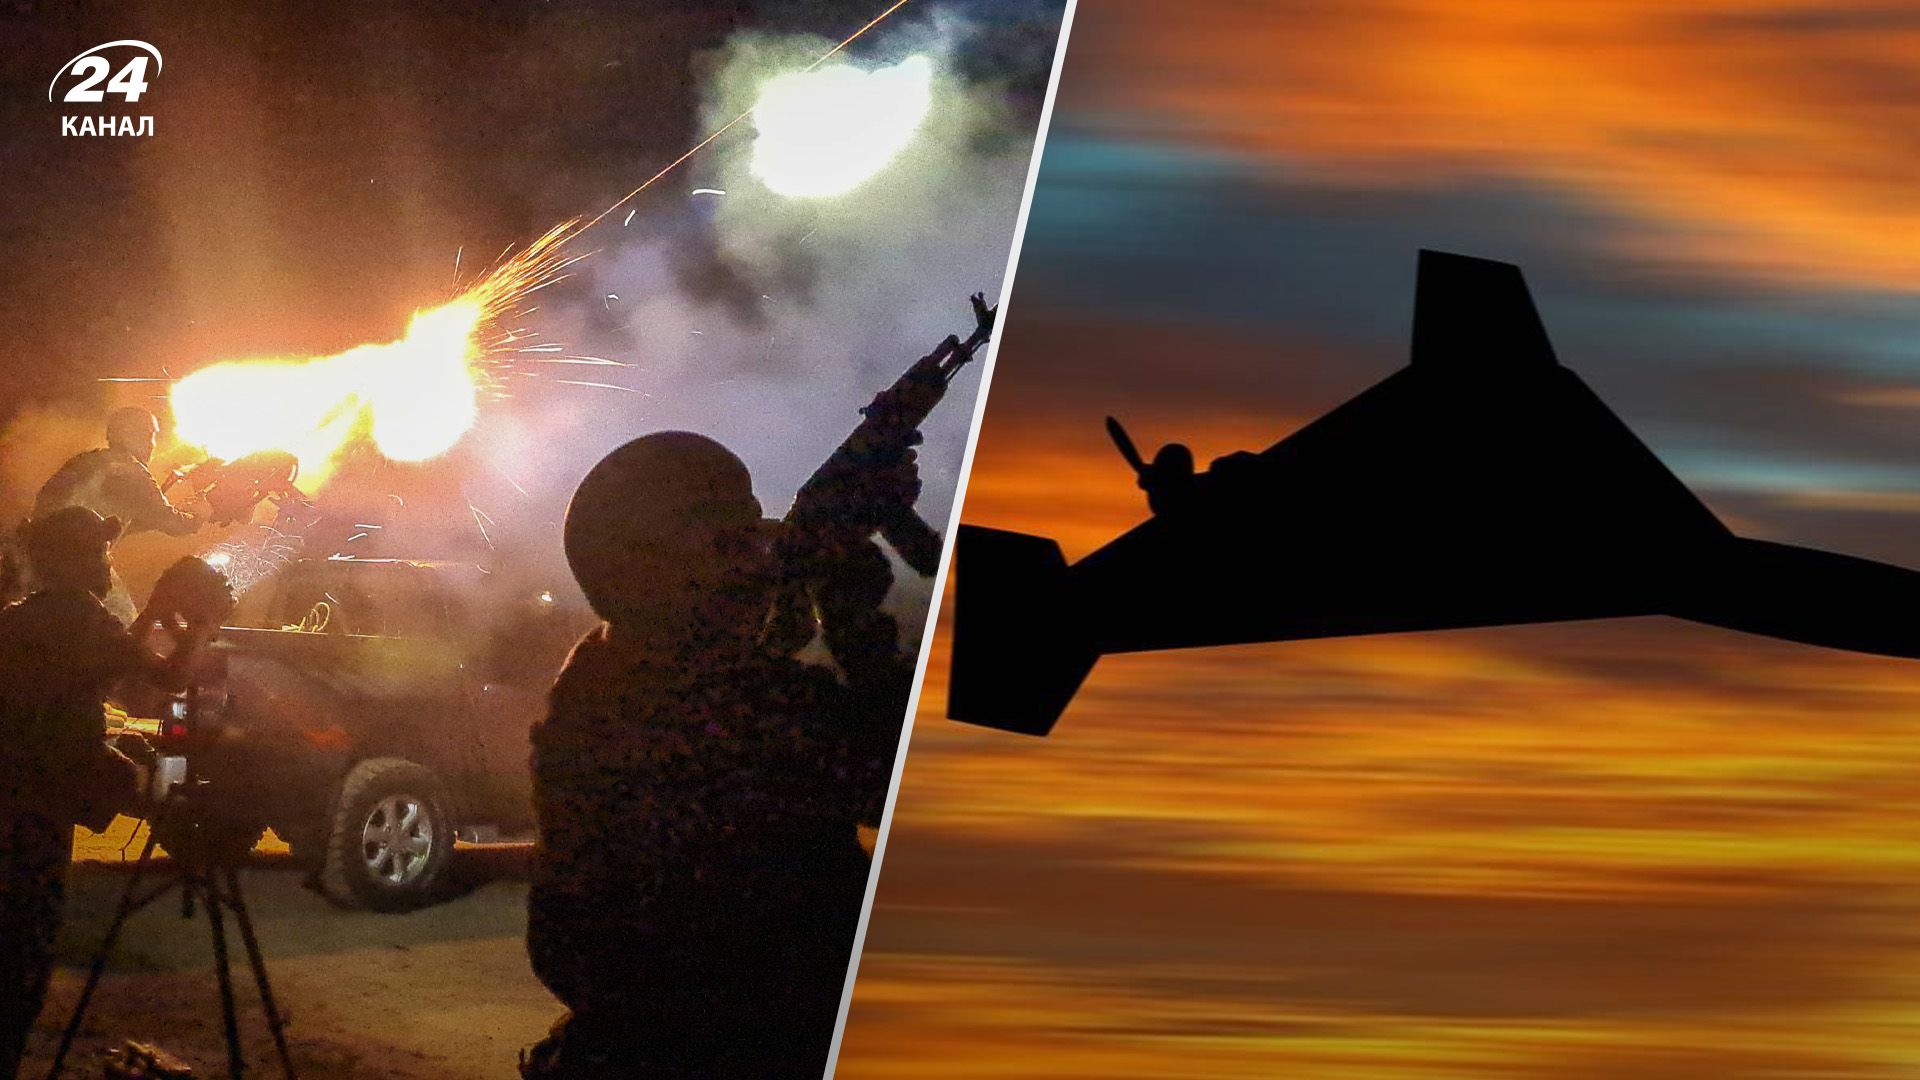 Враг в рождественскую ночь 6,5 часов атаковал Украину дронами: все о попадании и отражении атаки - 24 Канал